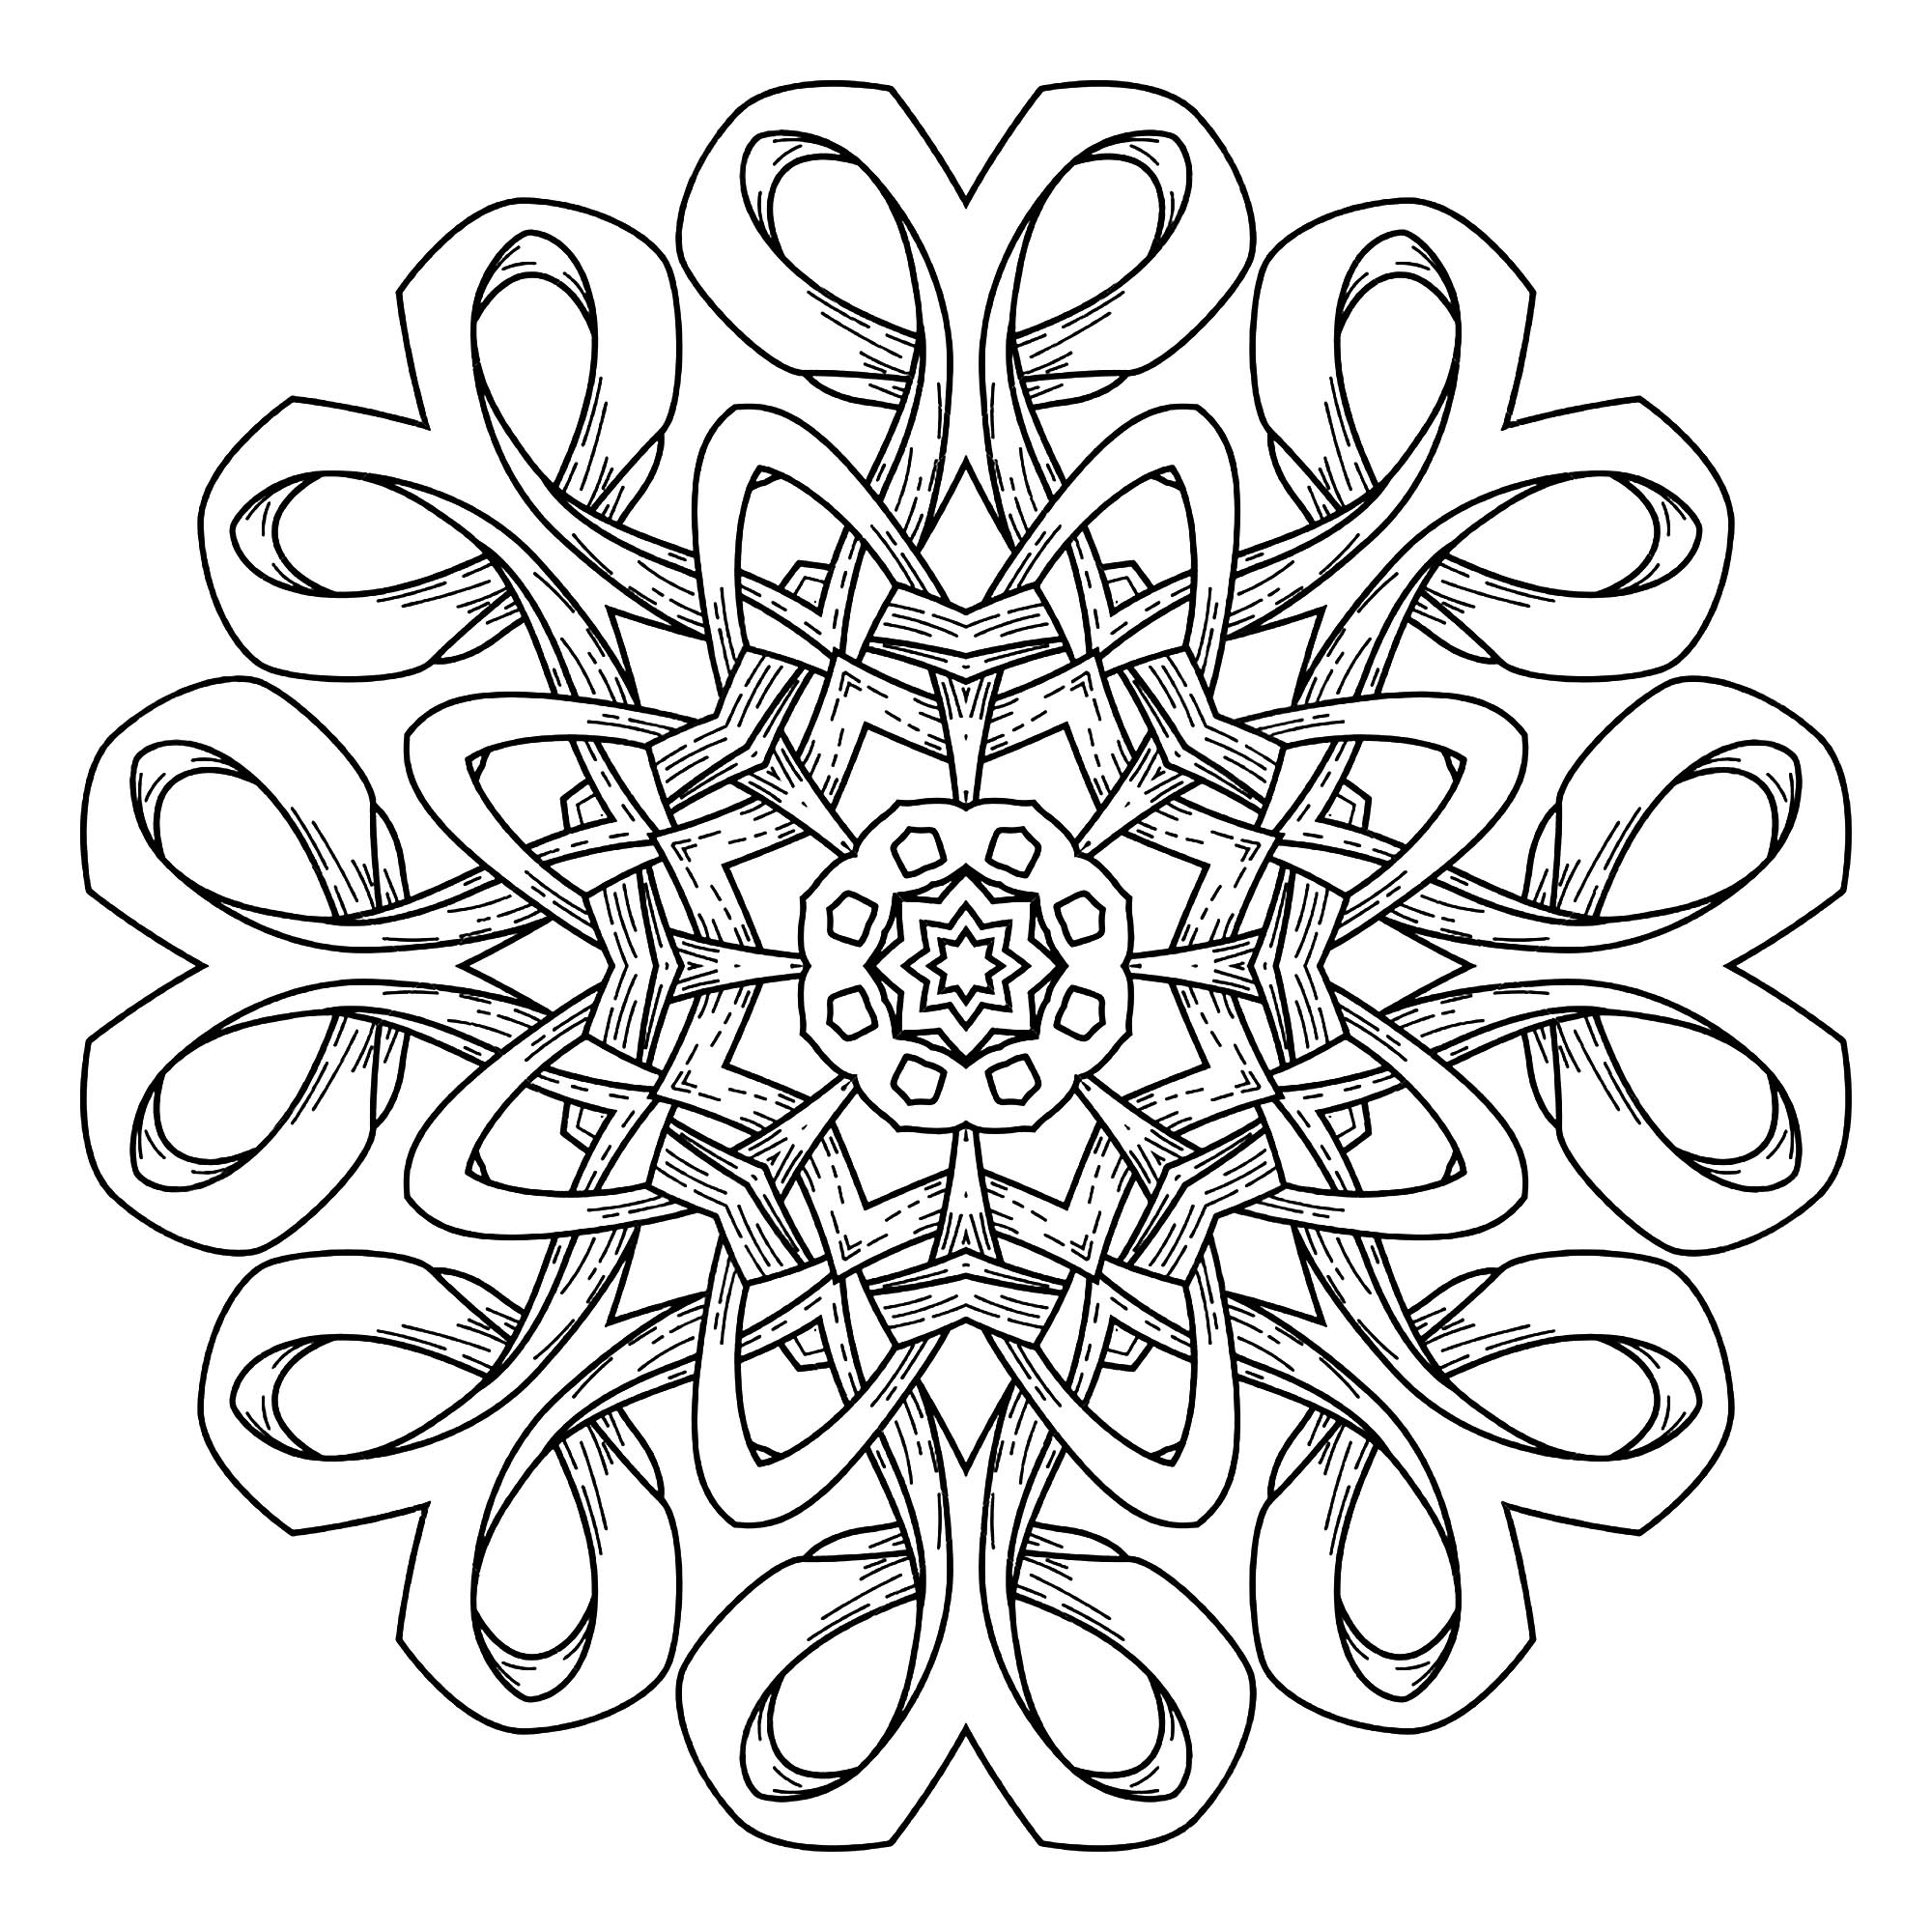 Laissez vous emporter par ce superbe Mandala intégrant des formes élégantes et harmonieuses. Utilisez les techniques que vous maitrisez le mieux pour le mettre en valeur.